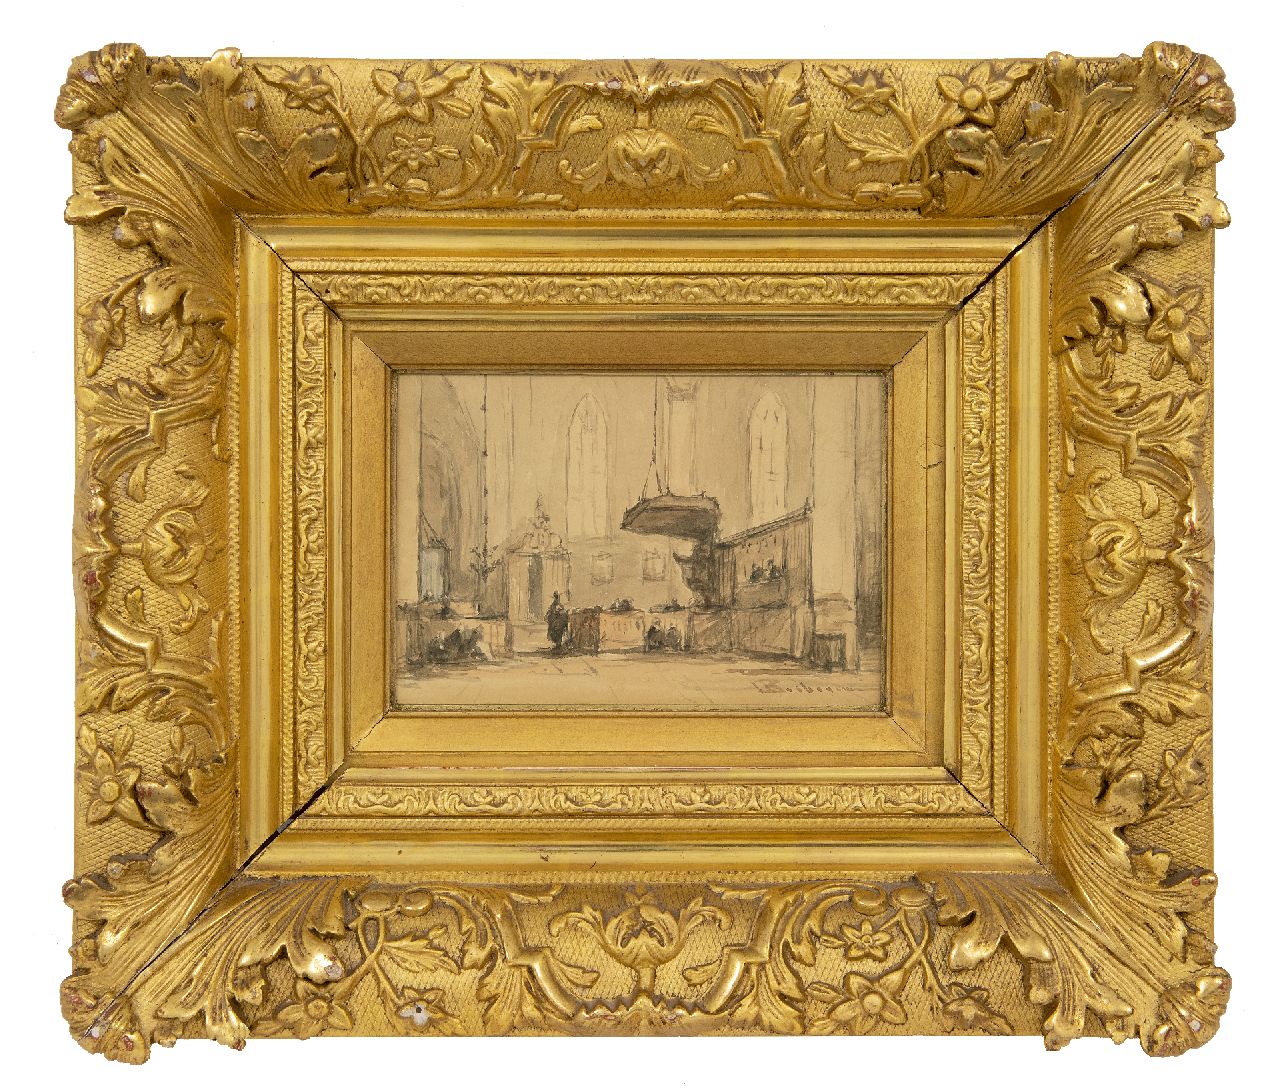 Bosboom J.  | Johannes Bosboom | Aquarellen en tekeningen te koop aangeboden | Interieur van de Grote Kerk te Alkmaar, aquarel op papier 12,1 x 18,2 cm, gesigneerd rechtsonder